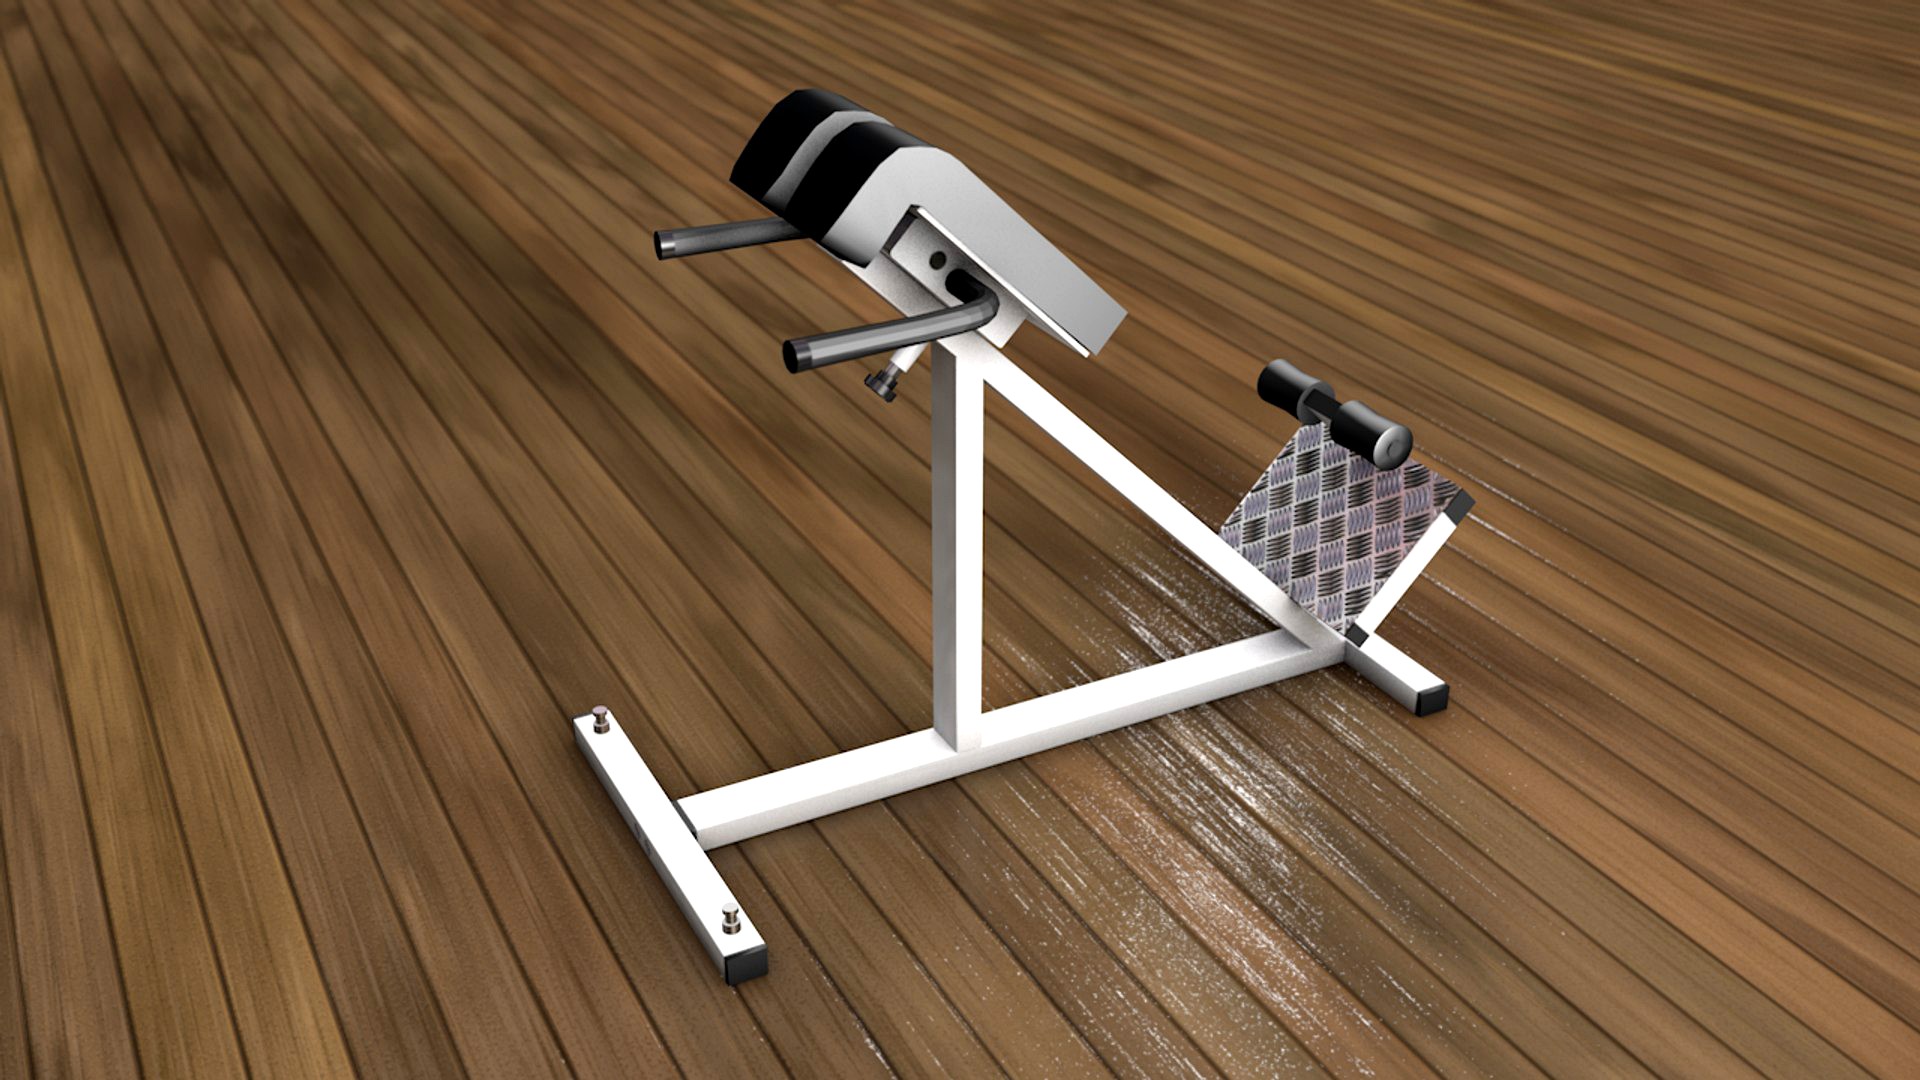 Lumbar Gym Equipment Training Back Machine